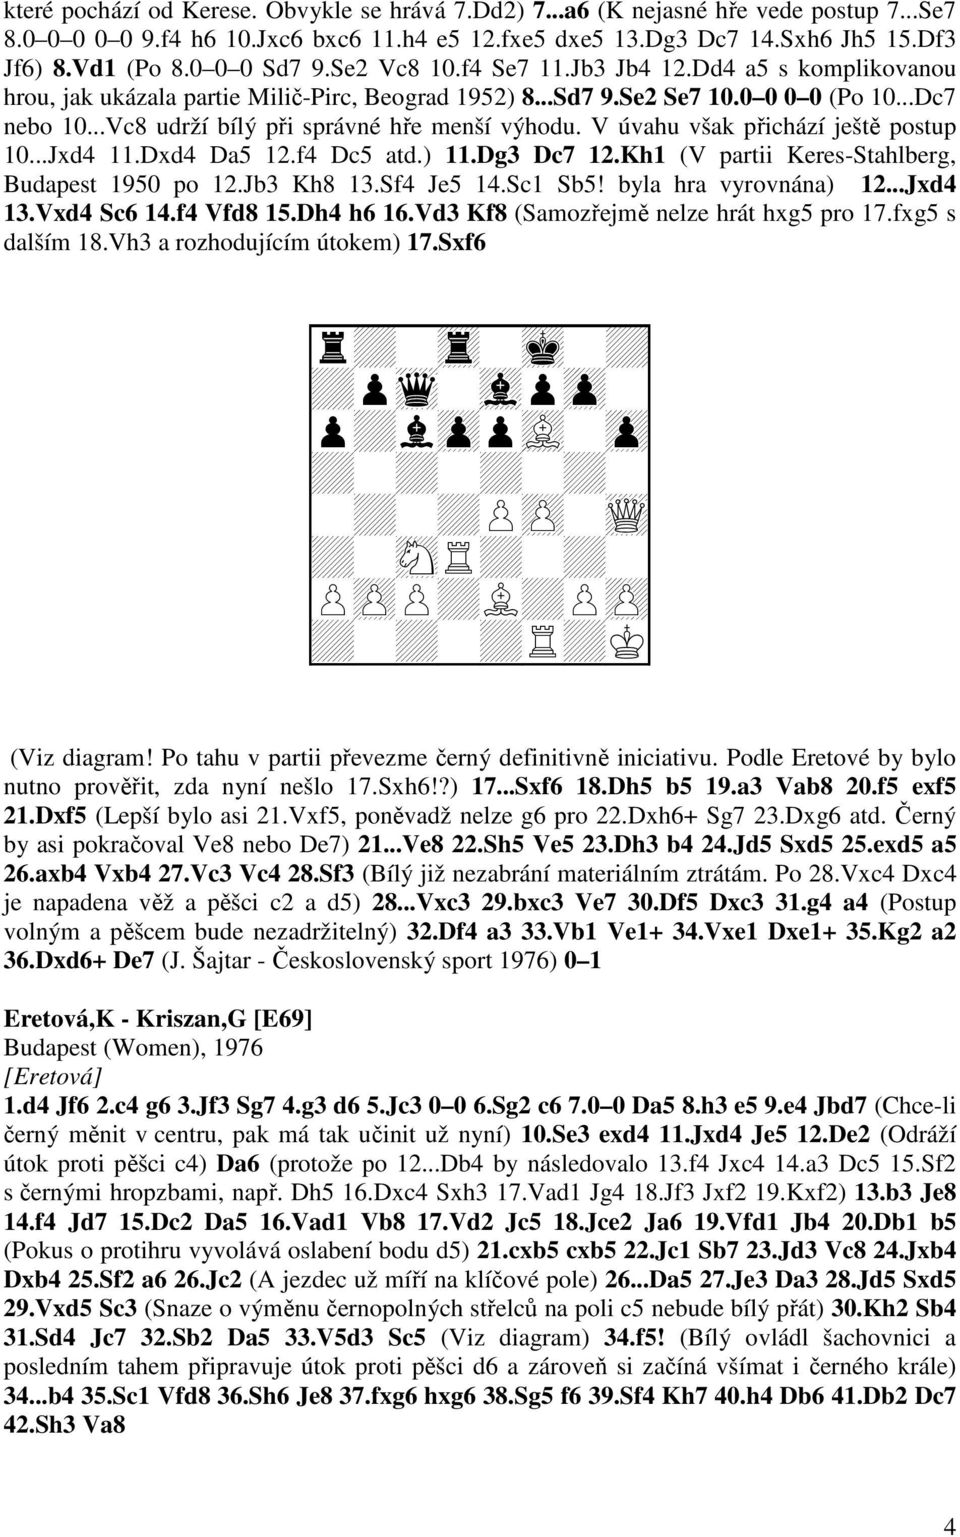 ..Vc8 udrží bílý při správné hře menší výhodu. V úvahu však přichází ještě postup 10...Jxd4 11.Dxd4 Da5 12.f4 Dc5 atd.) 11.Dg3 Dc7 12.Kh1 (V partii Keres-Stahlberg, Budapest 1950 po 12.Jb3 Kh8 13.